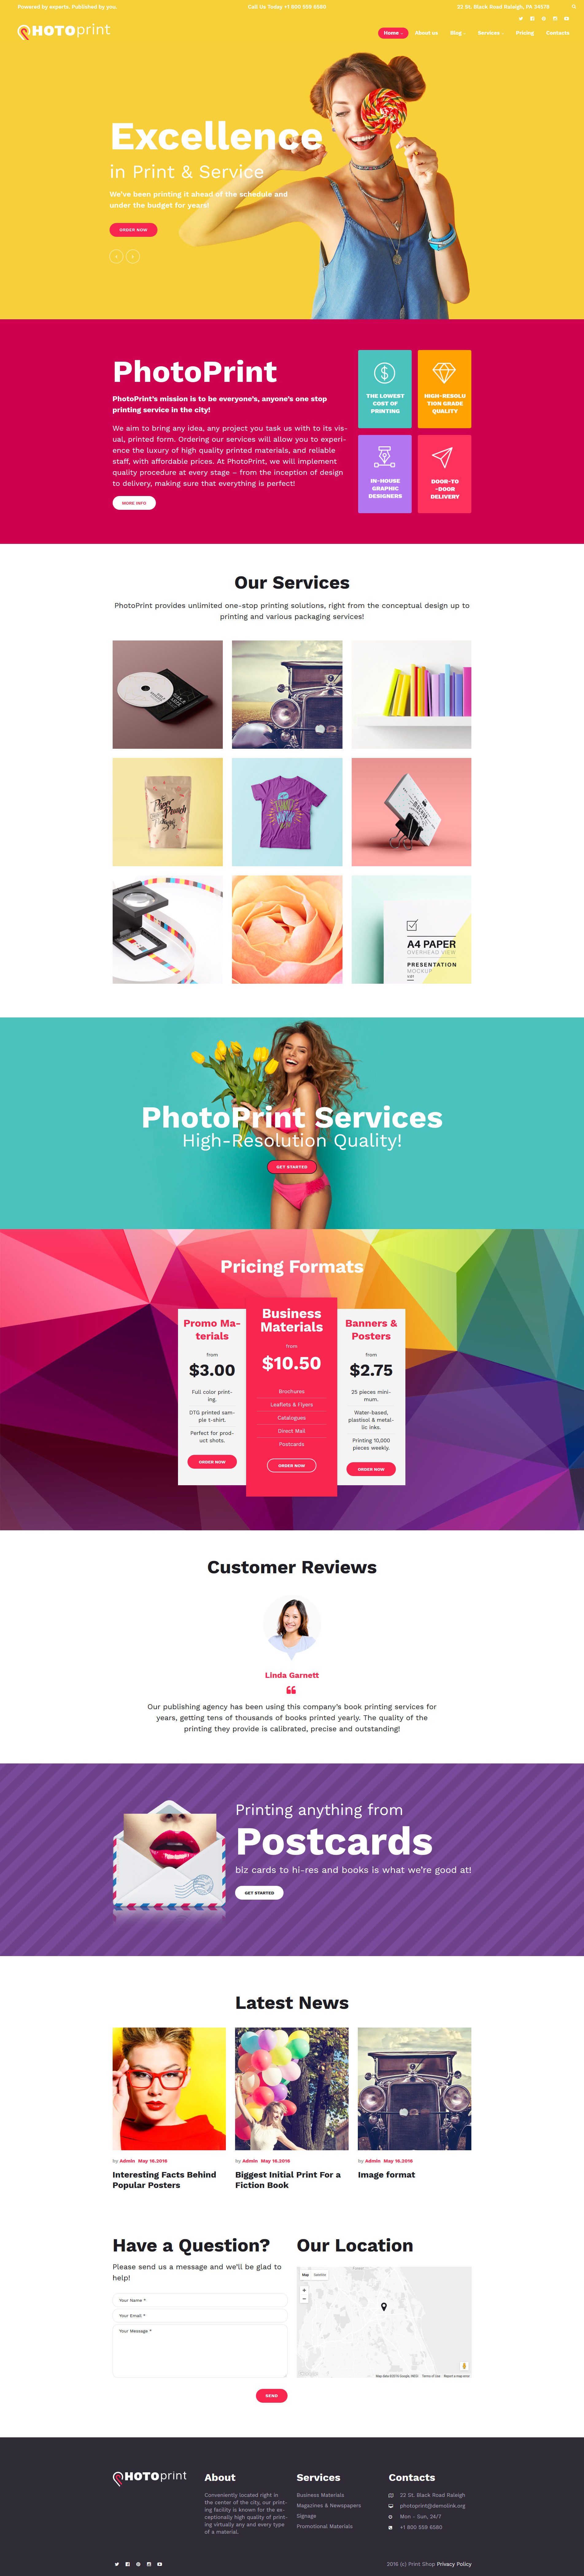 PhotoPrint - Print Shop Responsive WordPress Theme